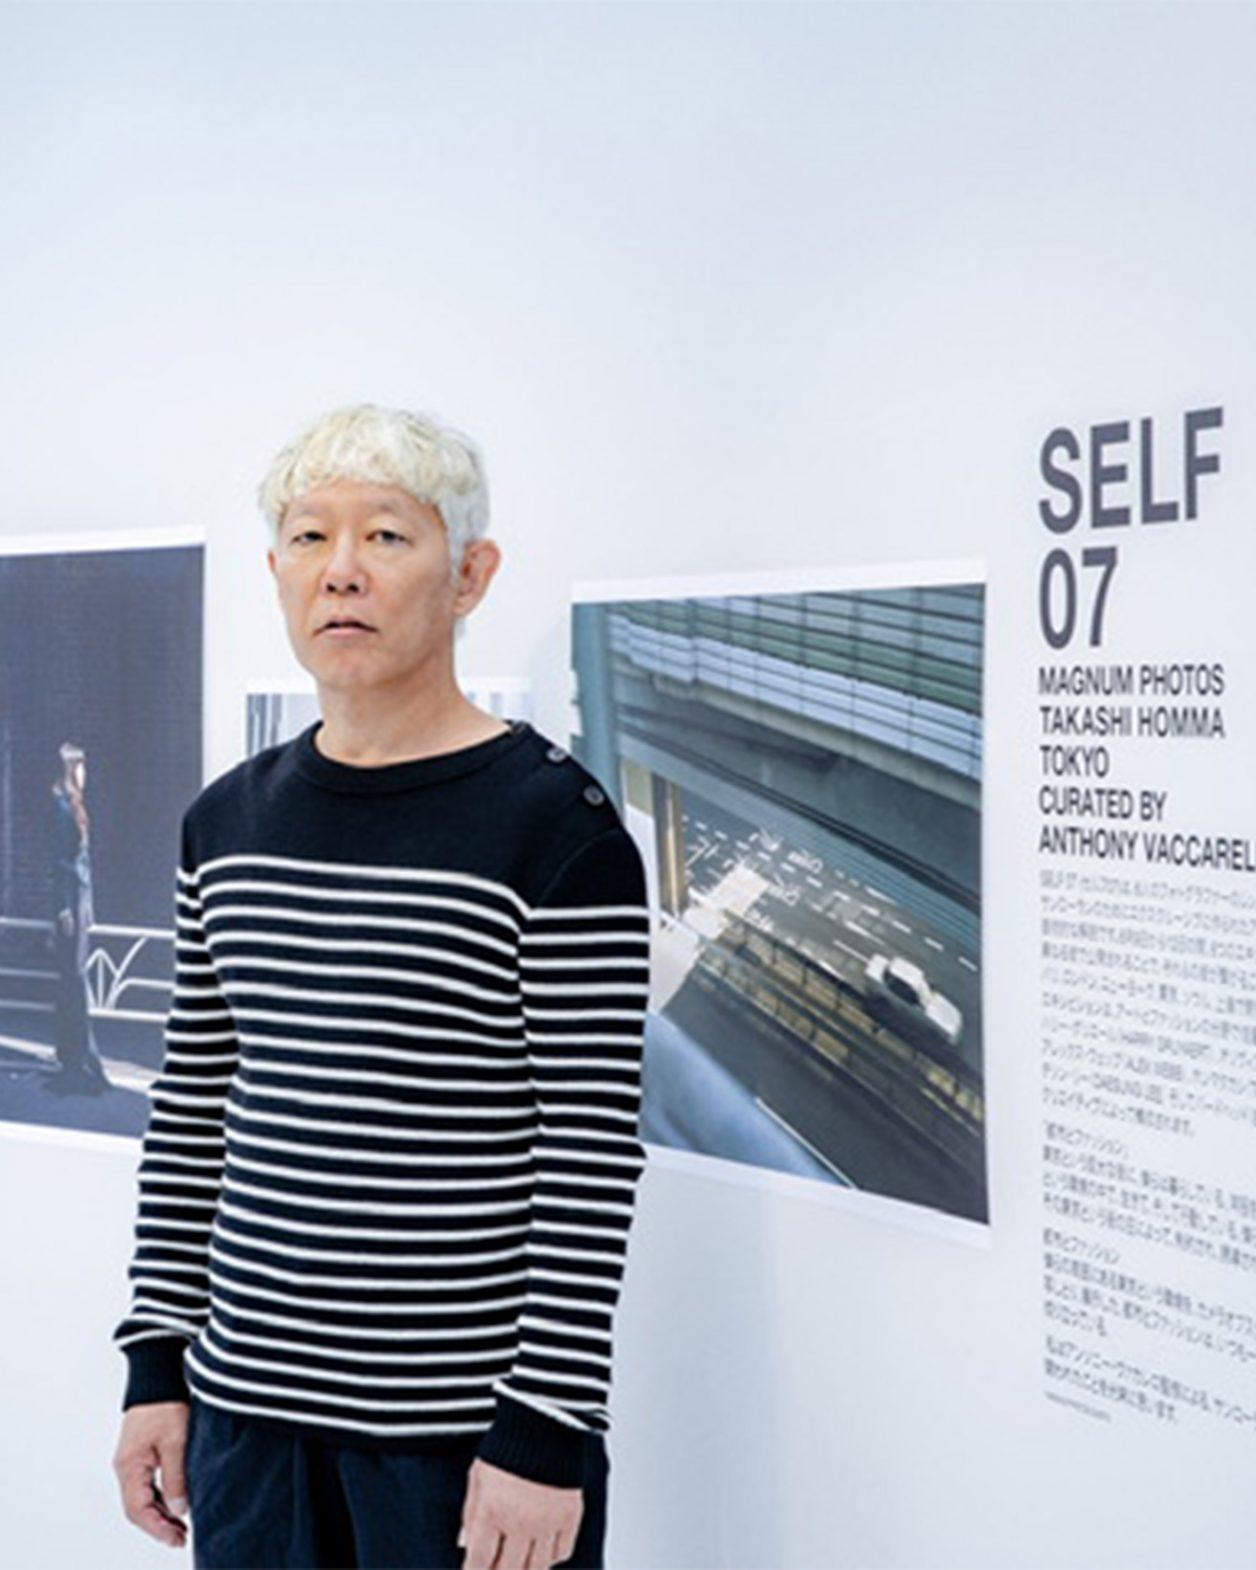 ホンマタカシが語るサンローランのアートプロジェクト「SELF 07」。